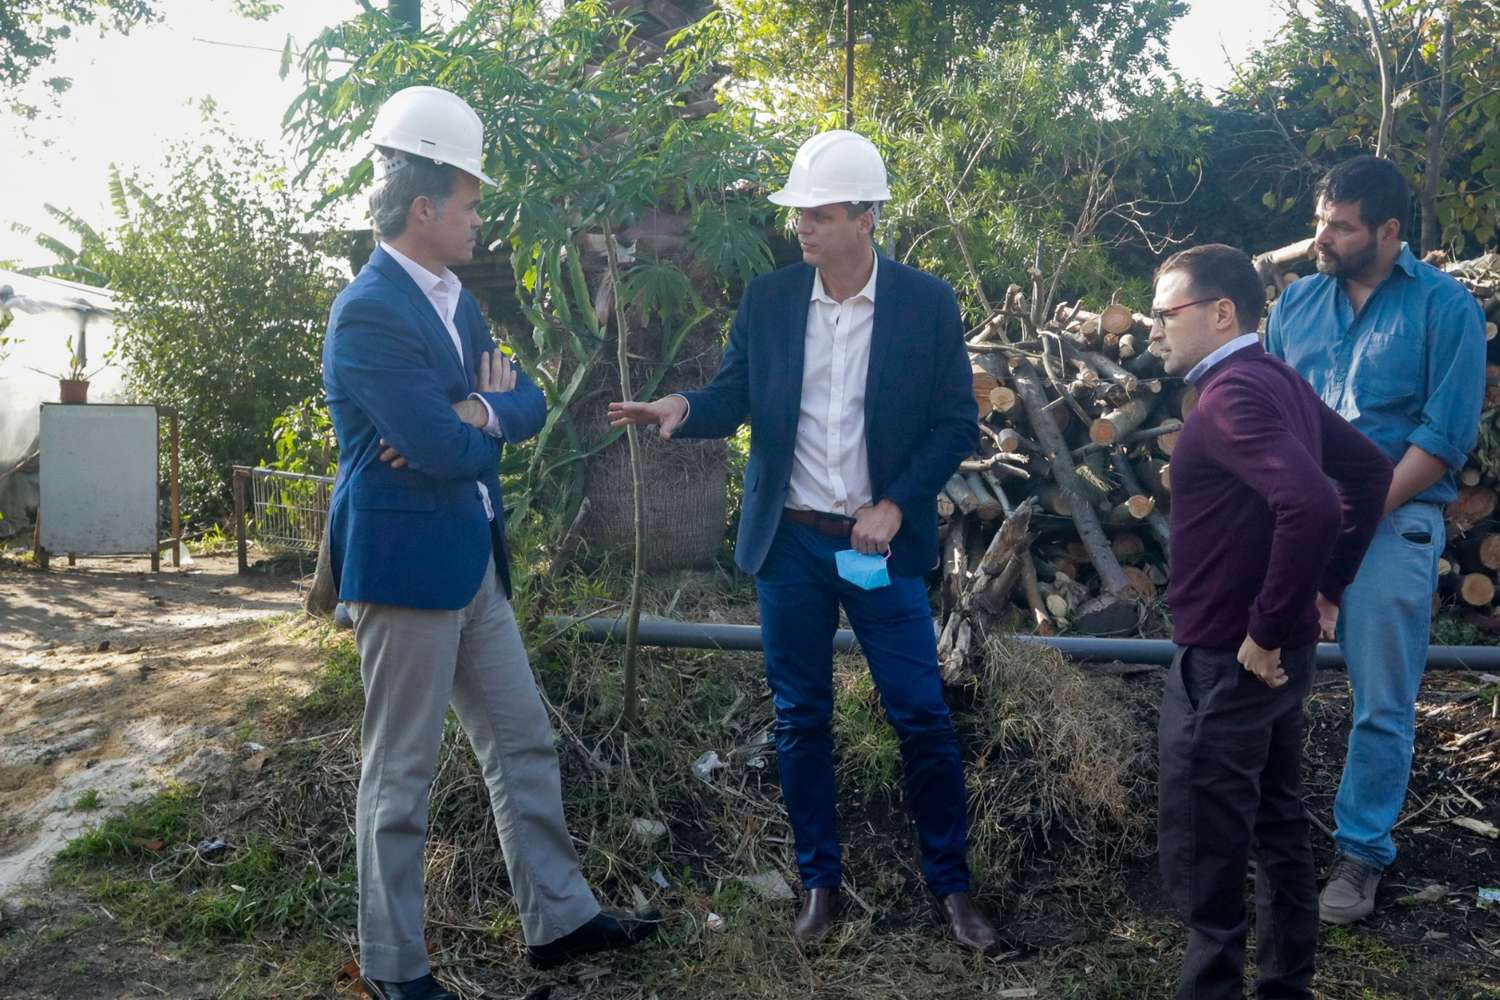 Piaggio y Cresto anunciaron el inicio  de obras de saneamiento en distintos barrios de la ciudad 